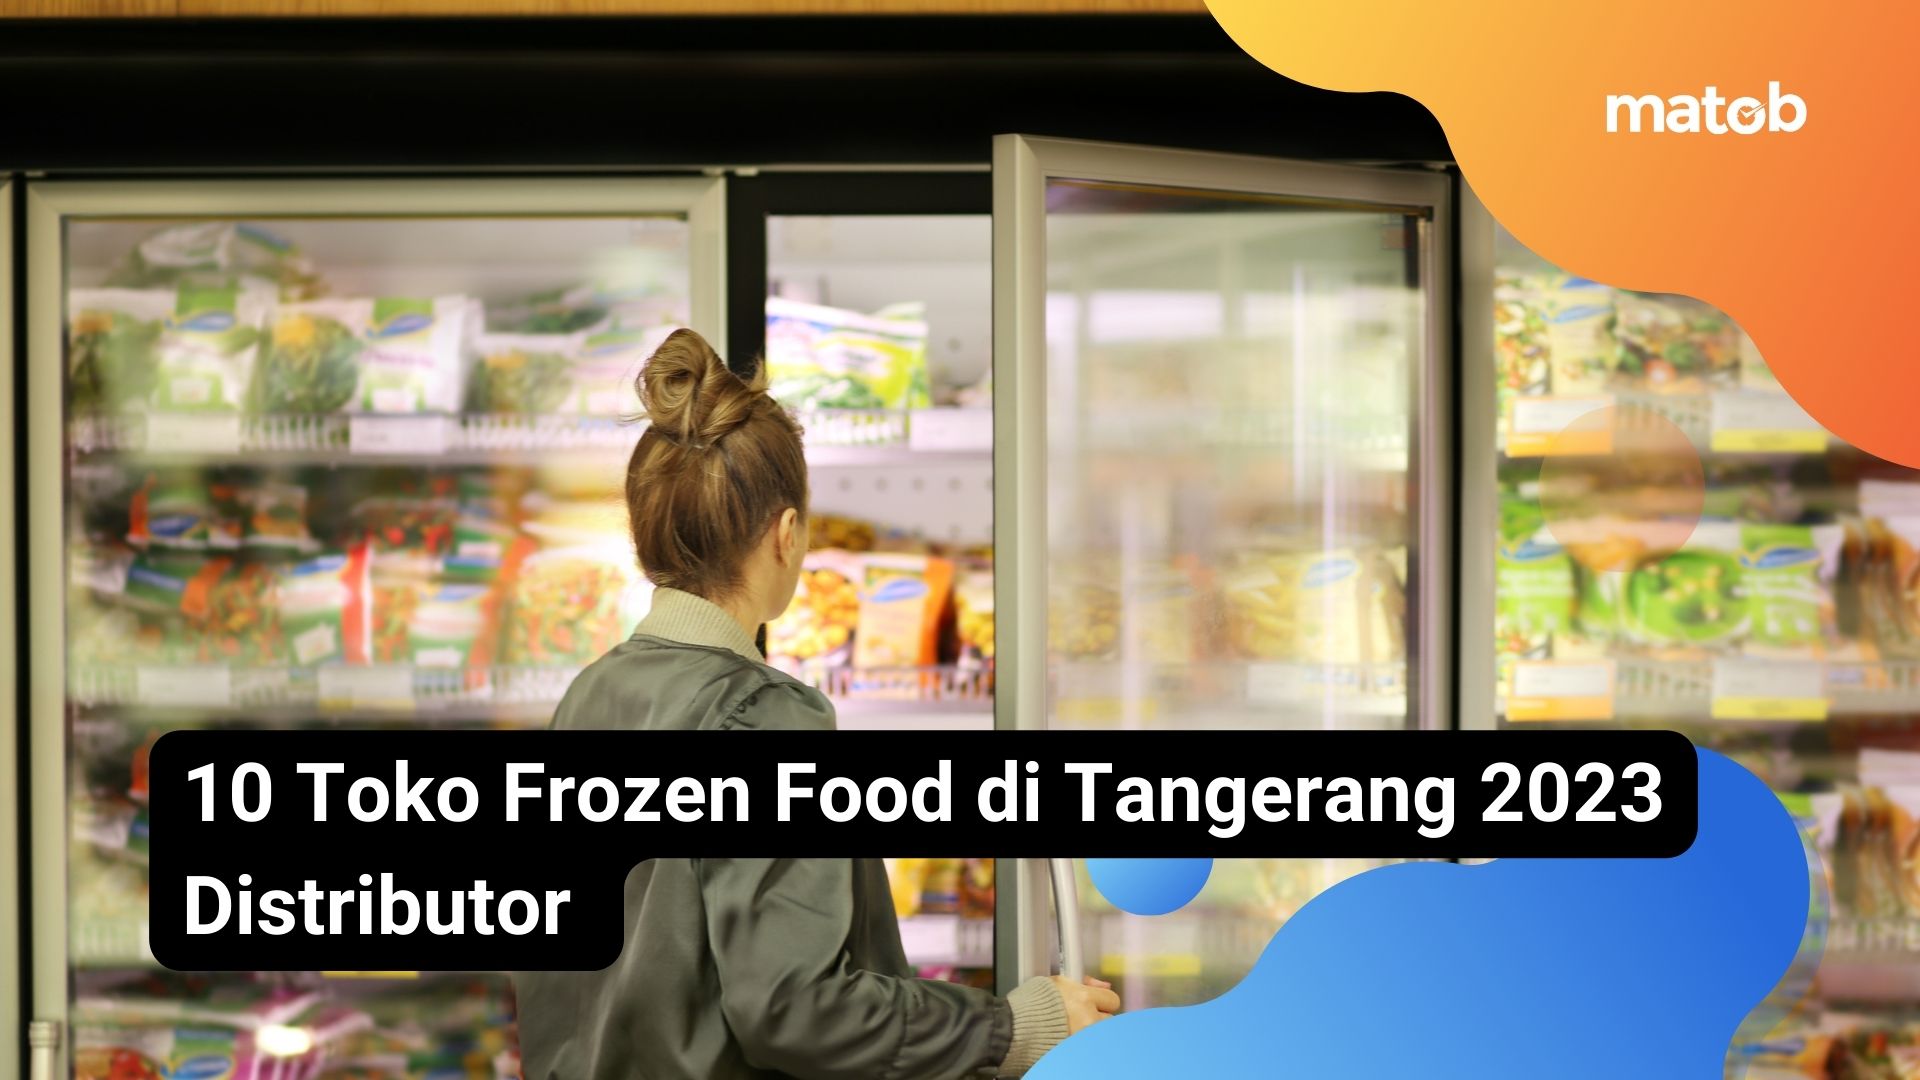 10 Toko Frozen Food di Tangerang 2023 Distributor